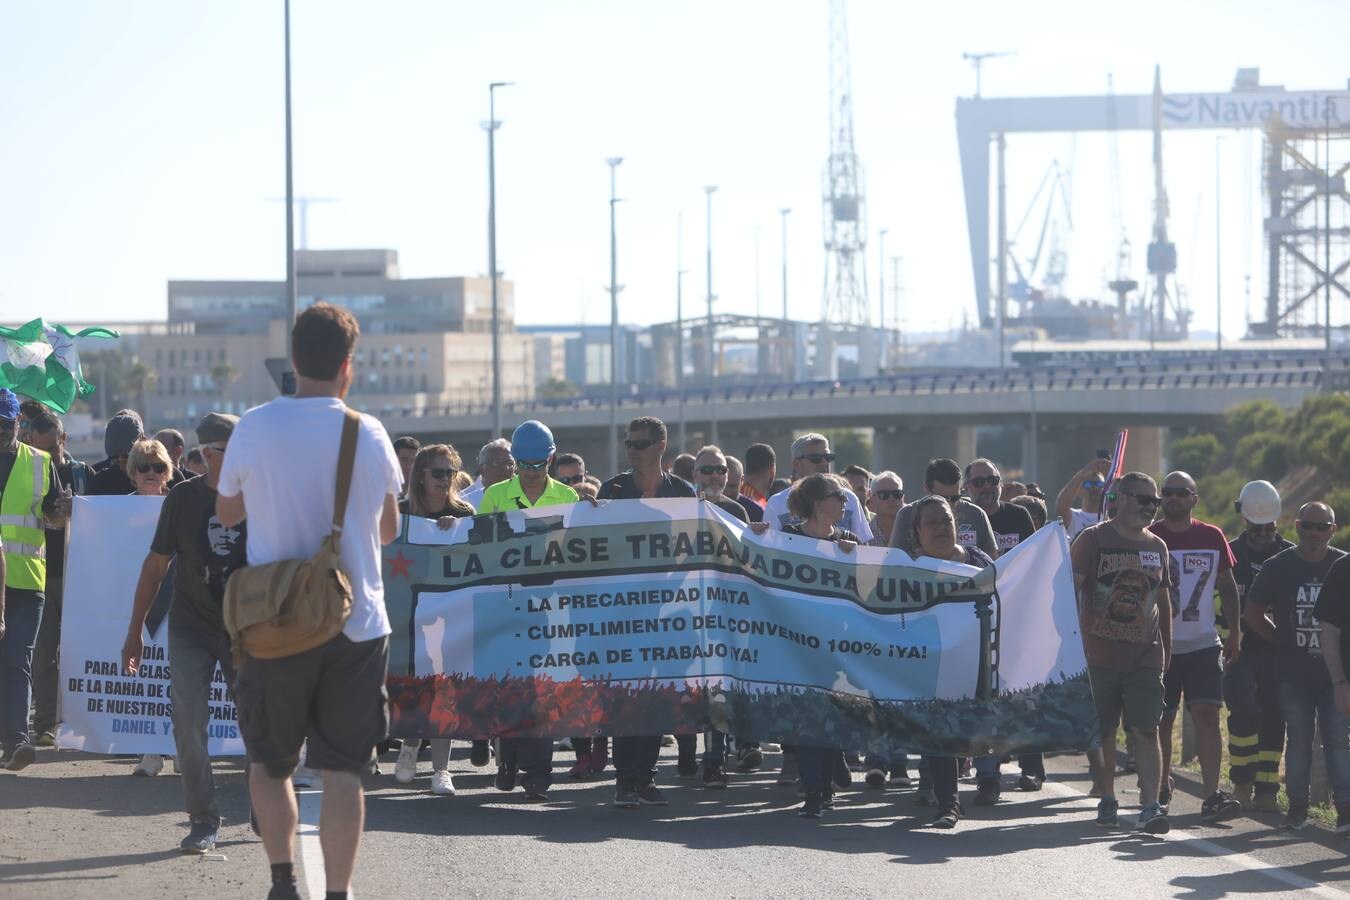 Las imágenes de la huelga del metal en la Bahía de Cádiz